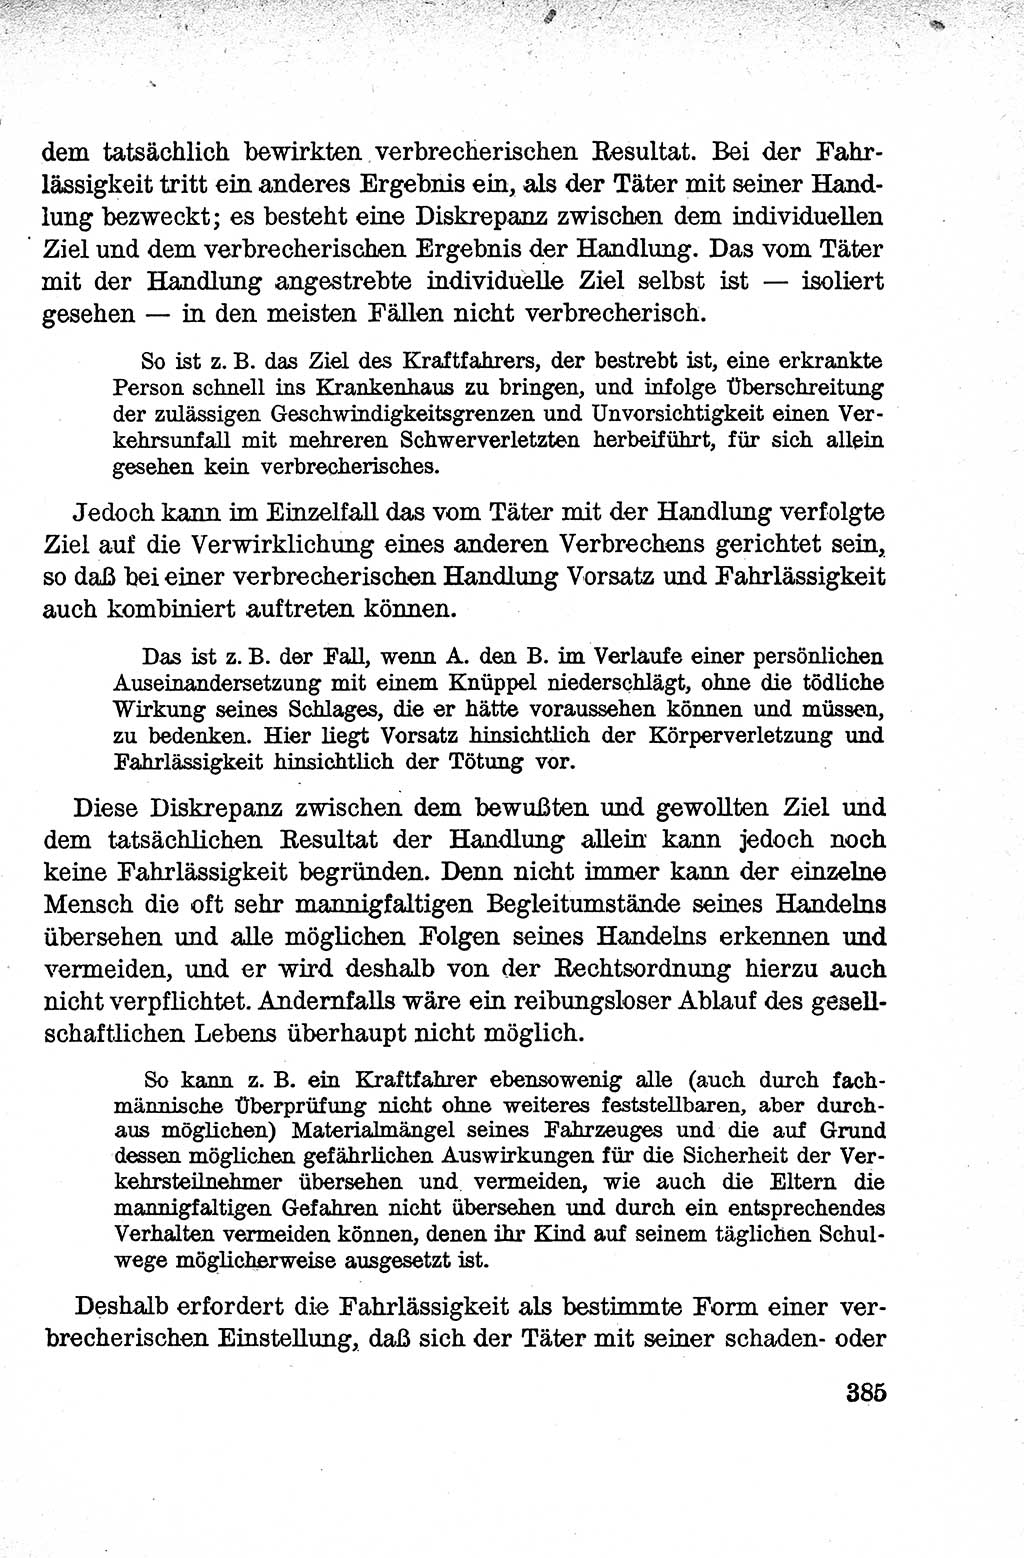 Lehrbuch des Strafrechts der Deutschen Demokratischen Republik (DDR), Allgemeiner Teil 1959, Seite 385 (Lb. Strafr. DDR AT 1959, S. 385)